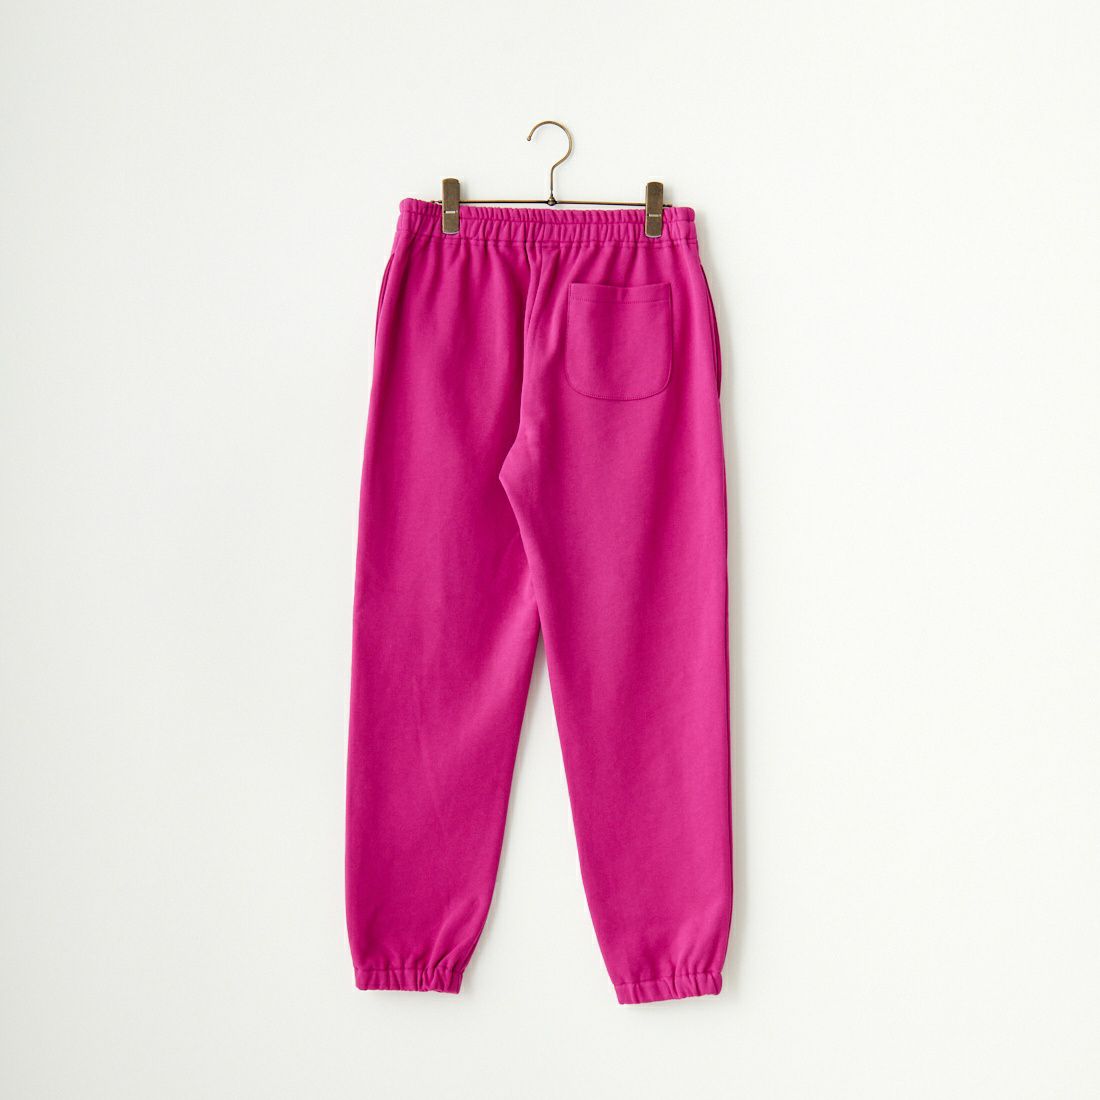 Jeans Factory Clothes [ジーンズファクトリークローズ] 7DAYS カラースウェットパンツ [NKT-002PT] PURPLE